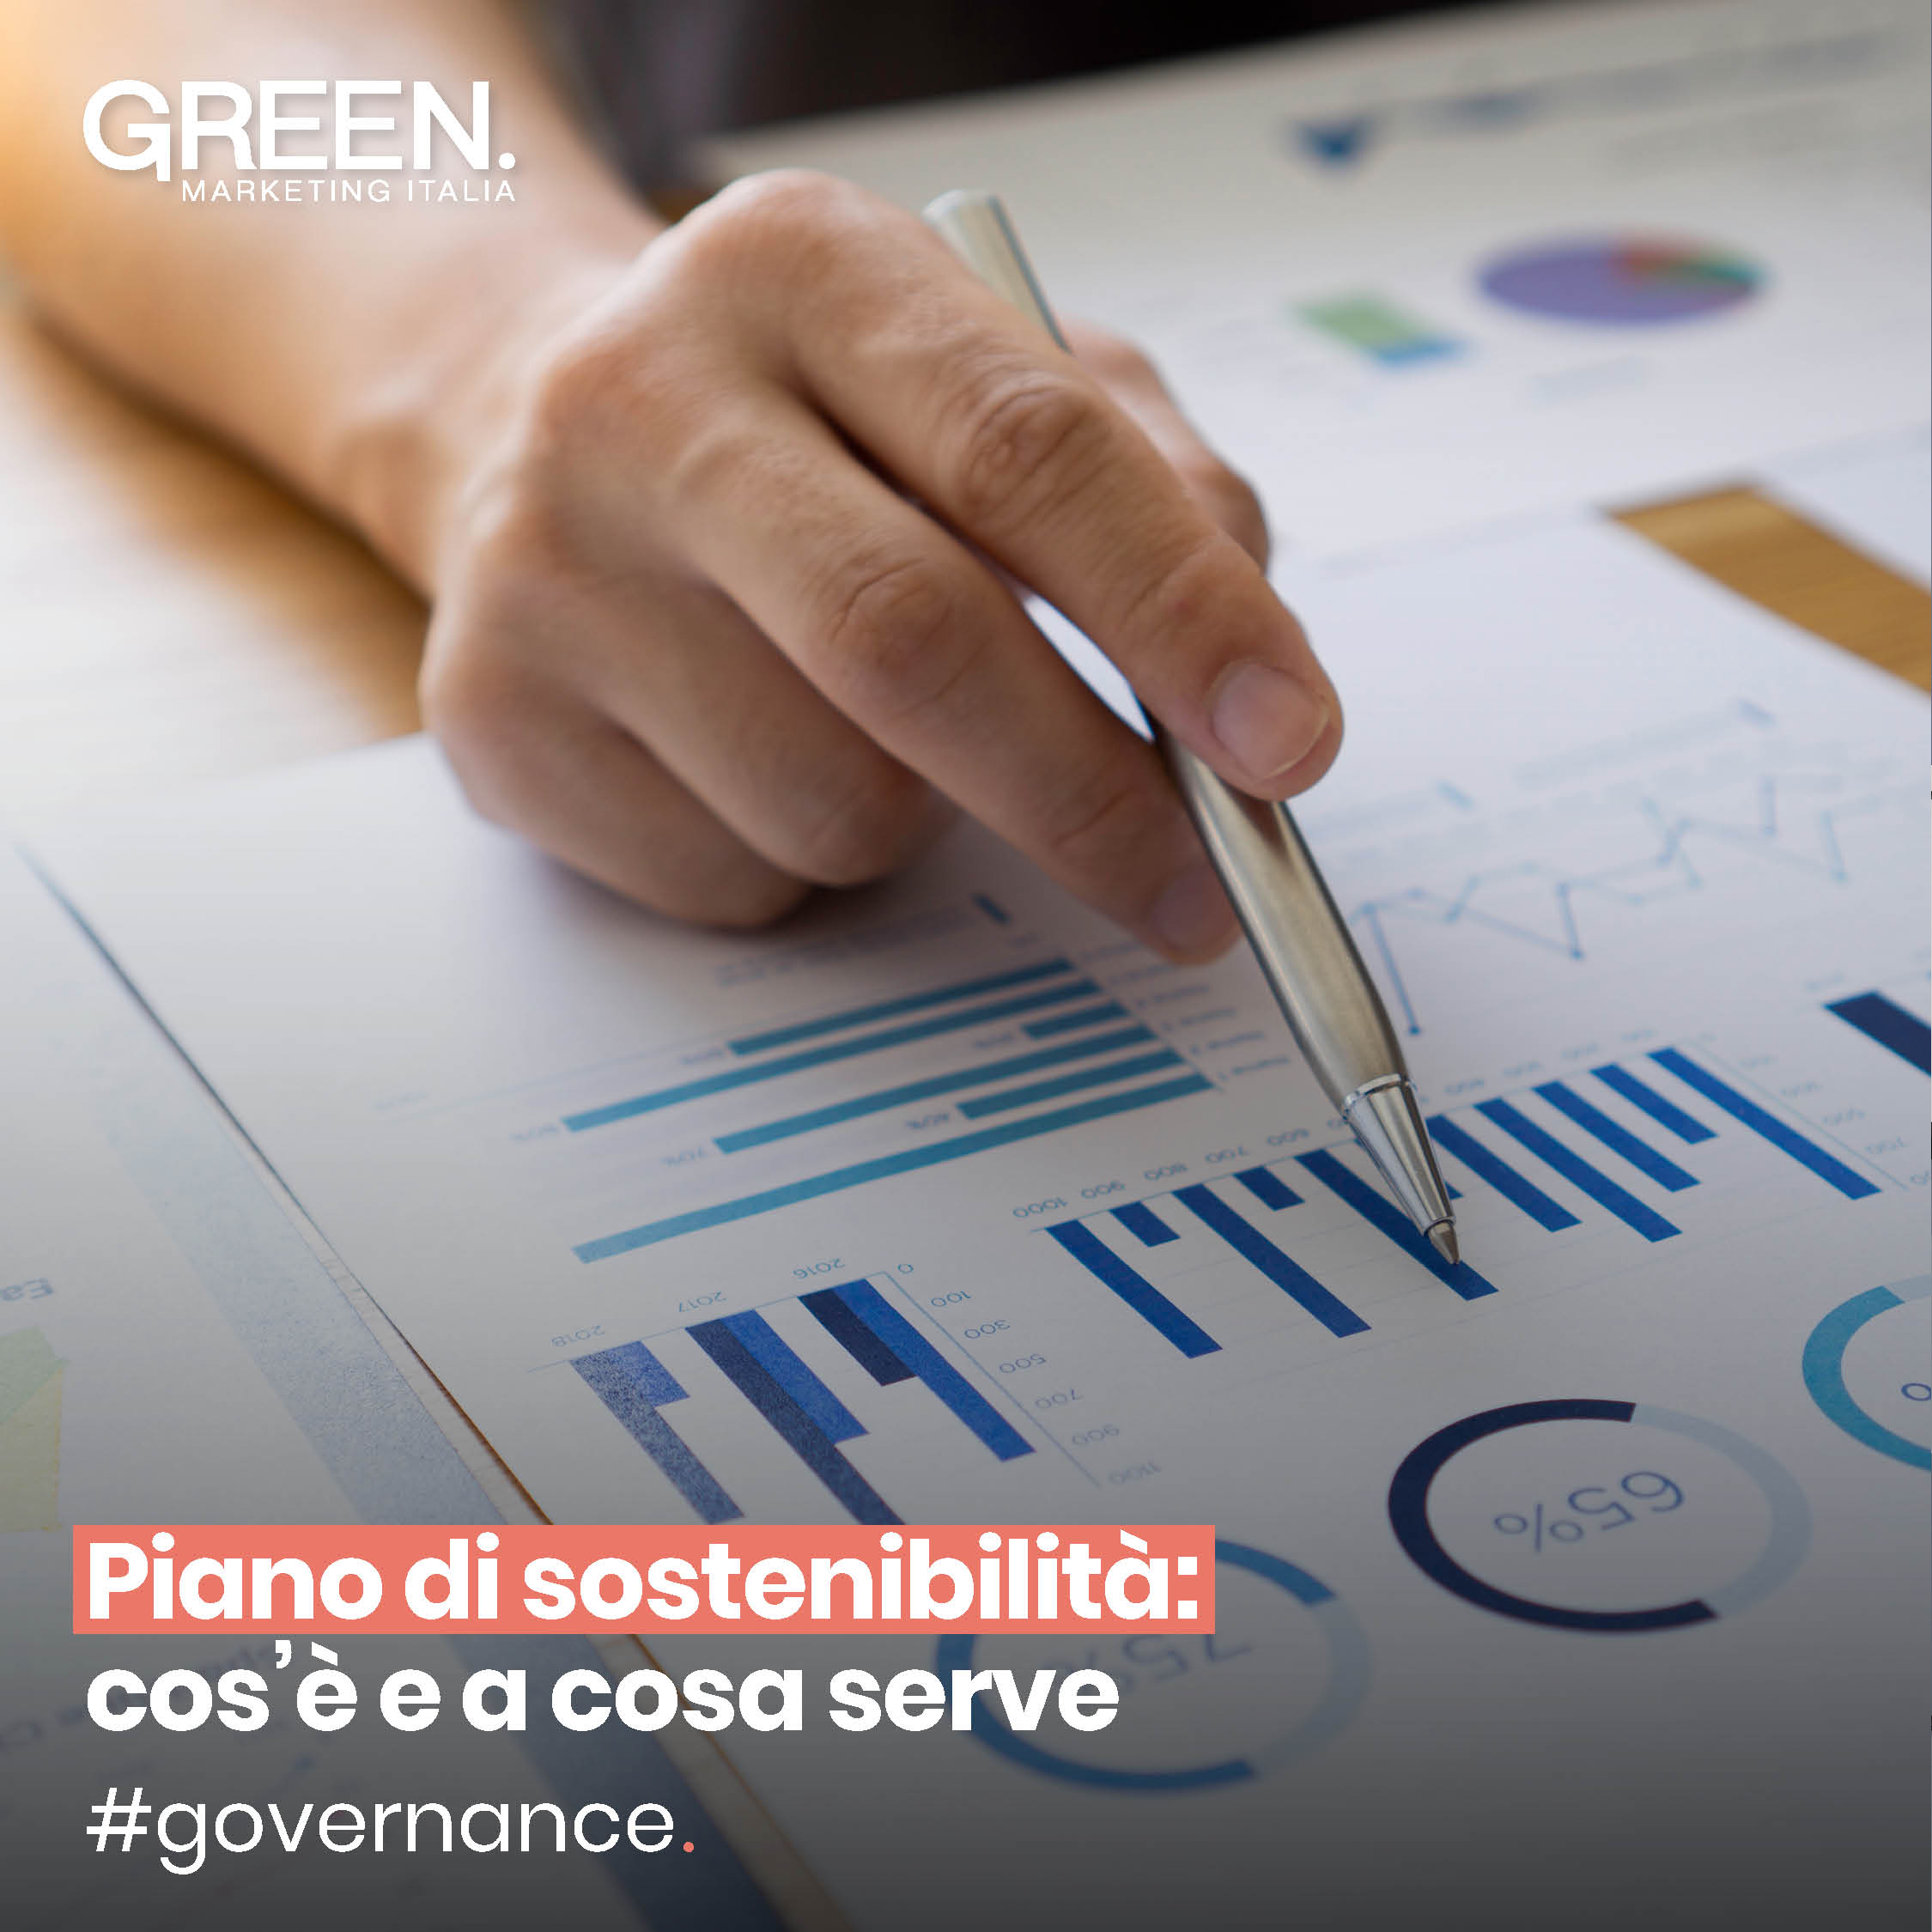 Piano di sostenibilità cos'è e a cosa serve nel green marketing